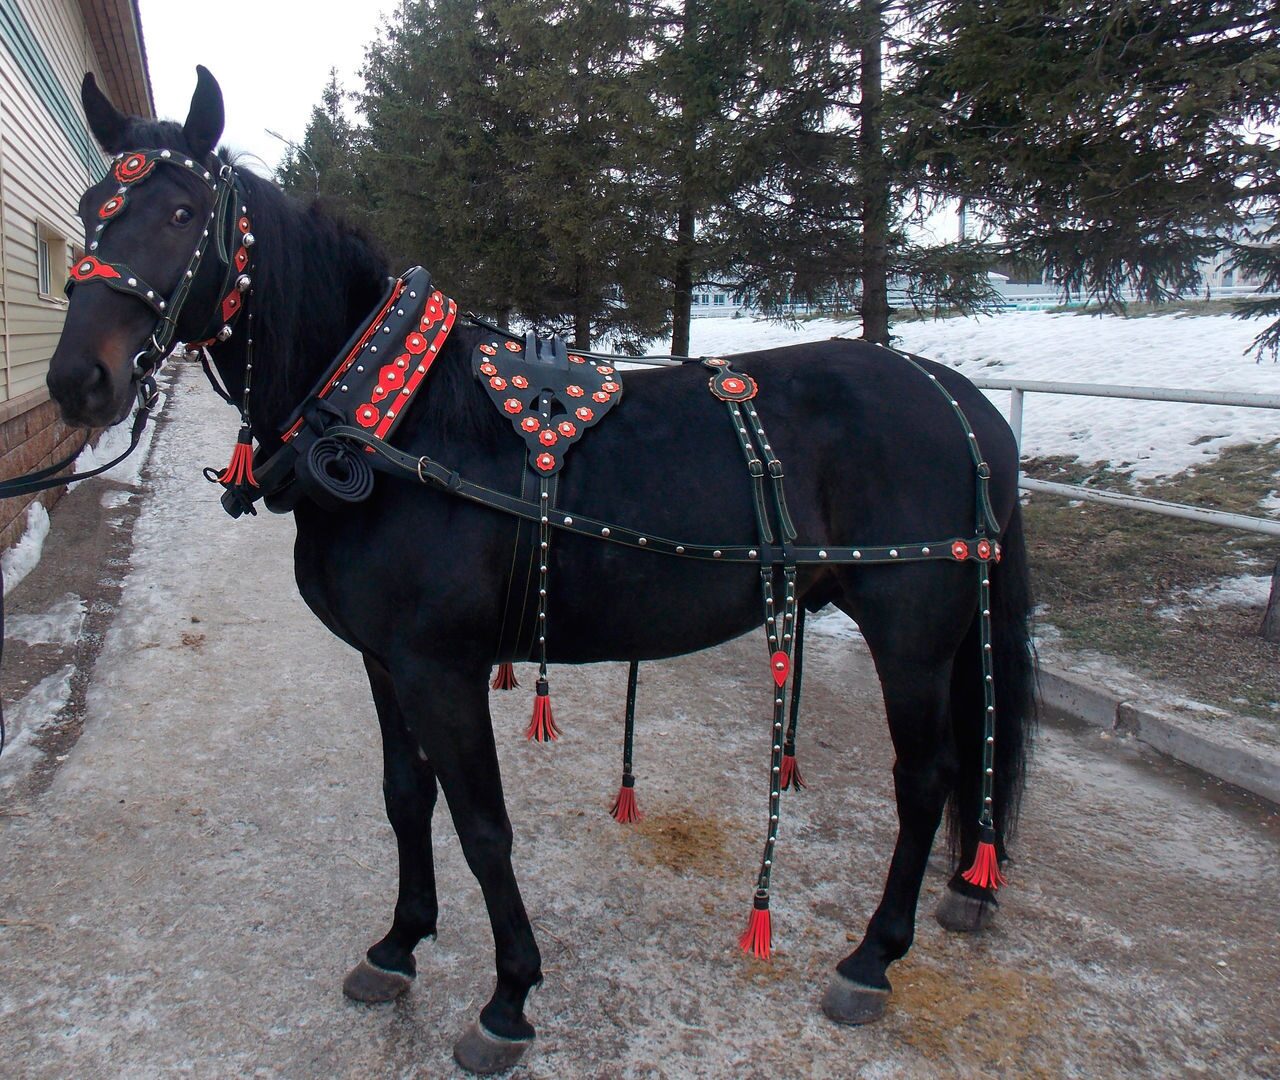 Где Купить Лошадь В Новосибирске